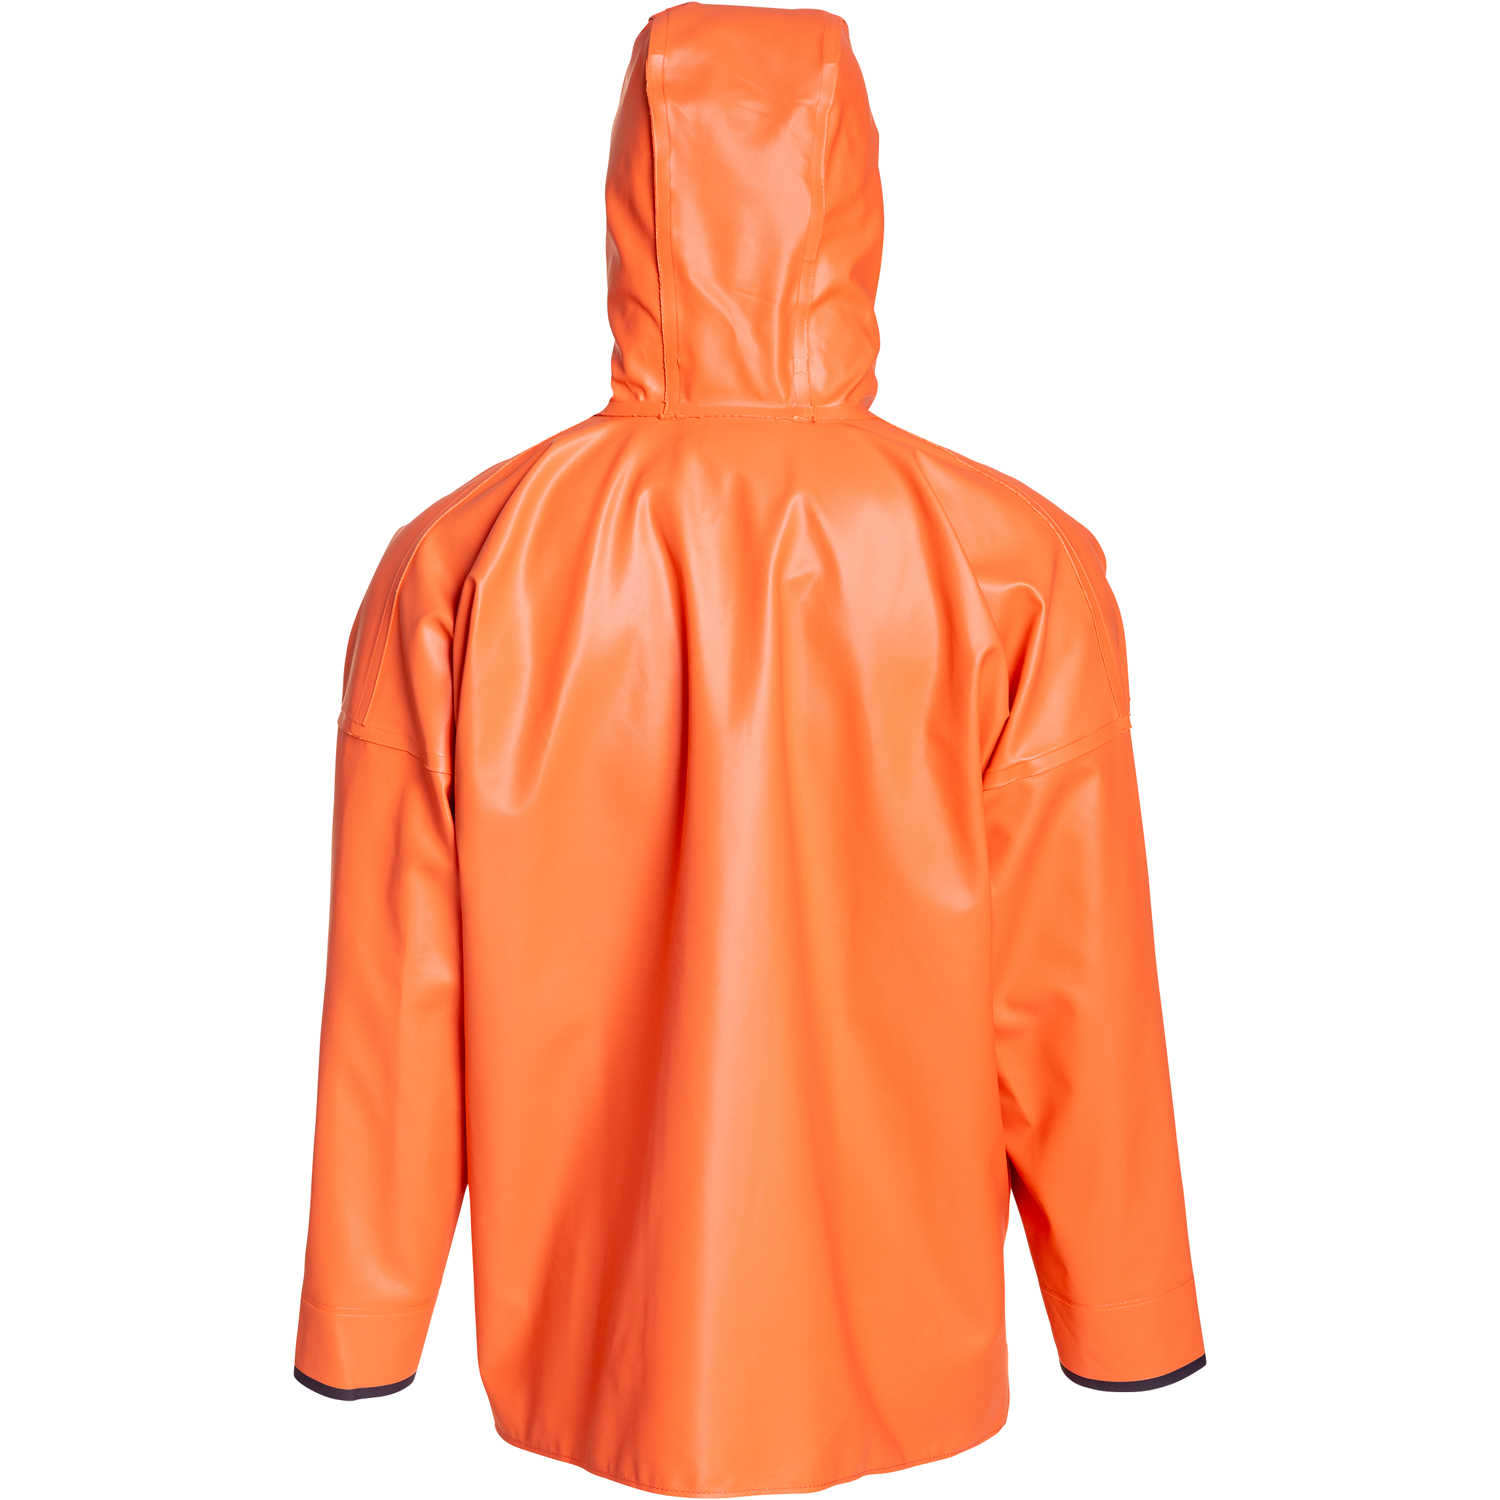 Grundens Brigg 40 Rain Jacket Orange Large 7391652333183 | eBay